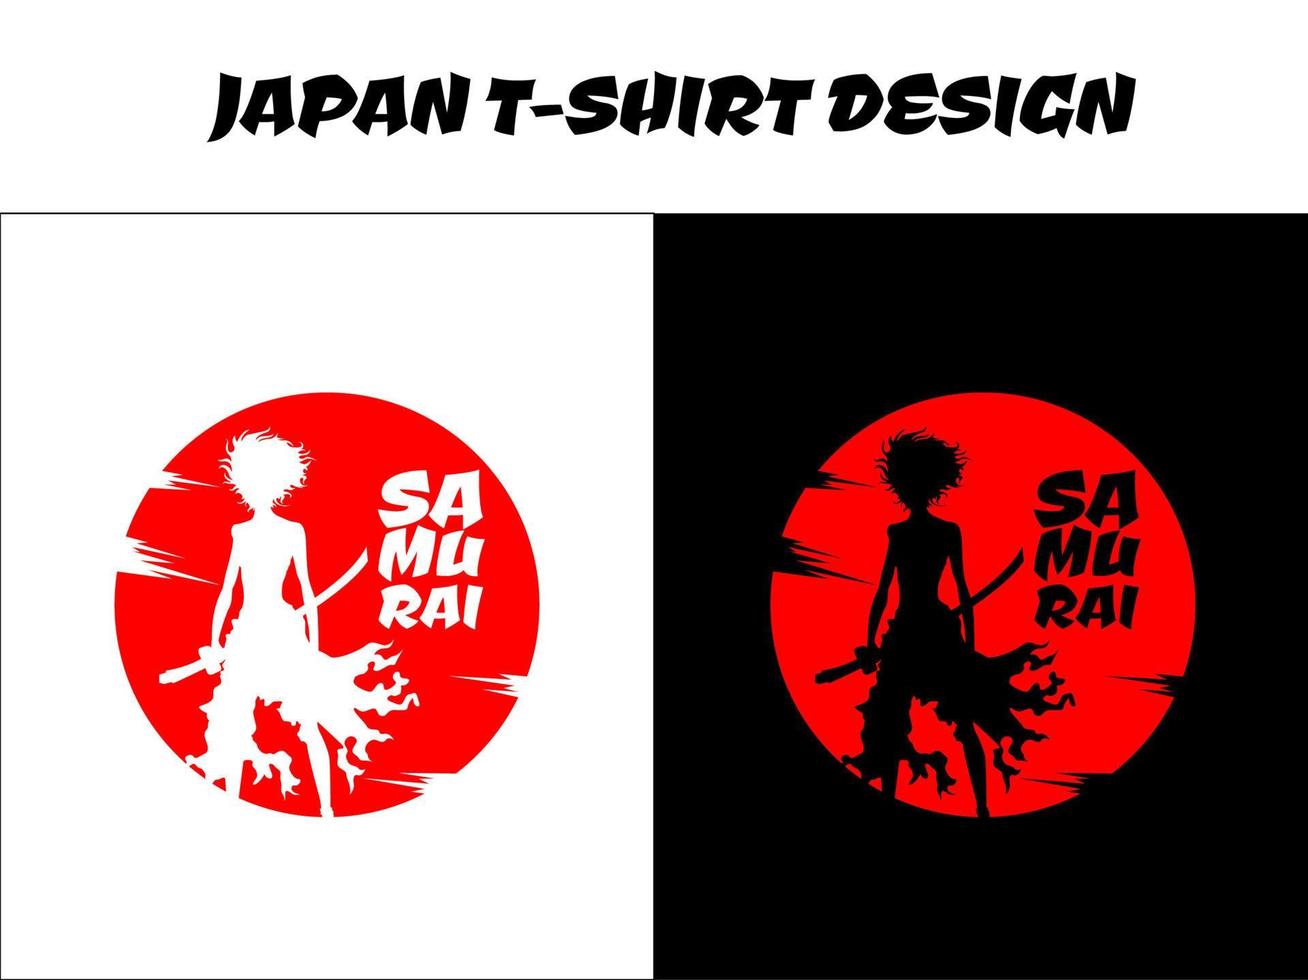 vetor de samurai feminino para o conceito de camiseta de design, samurai urbano, samurai de silhueta, design de camiseta japonesa, design de tema japonês, ilustração vetorial de samurai